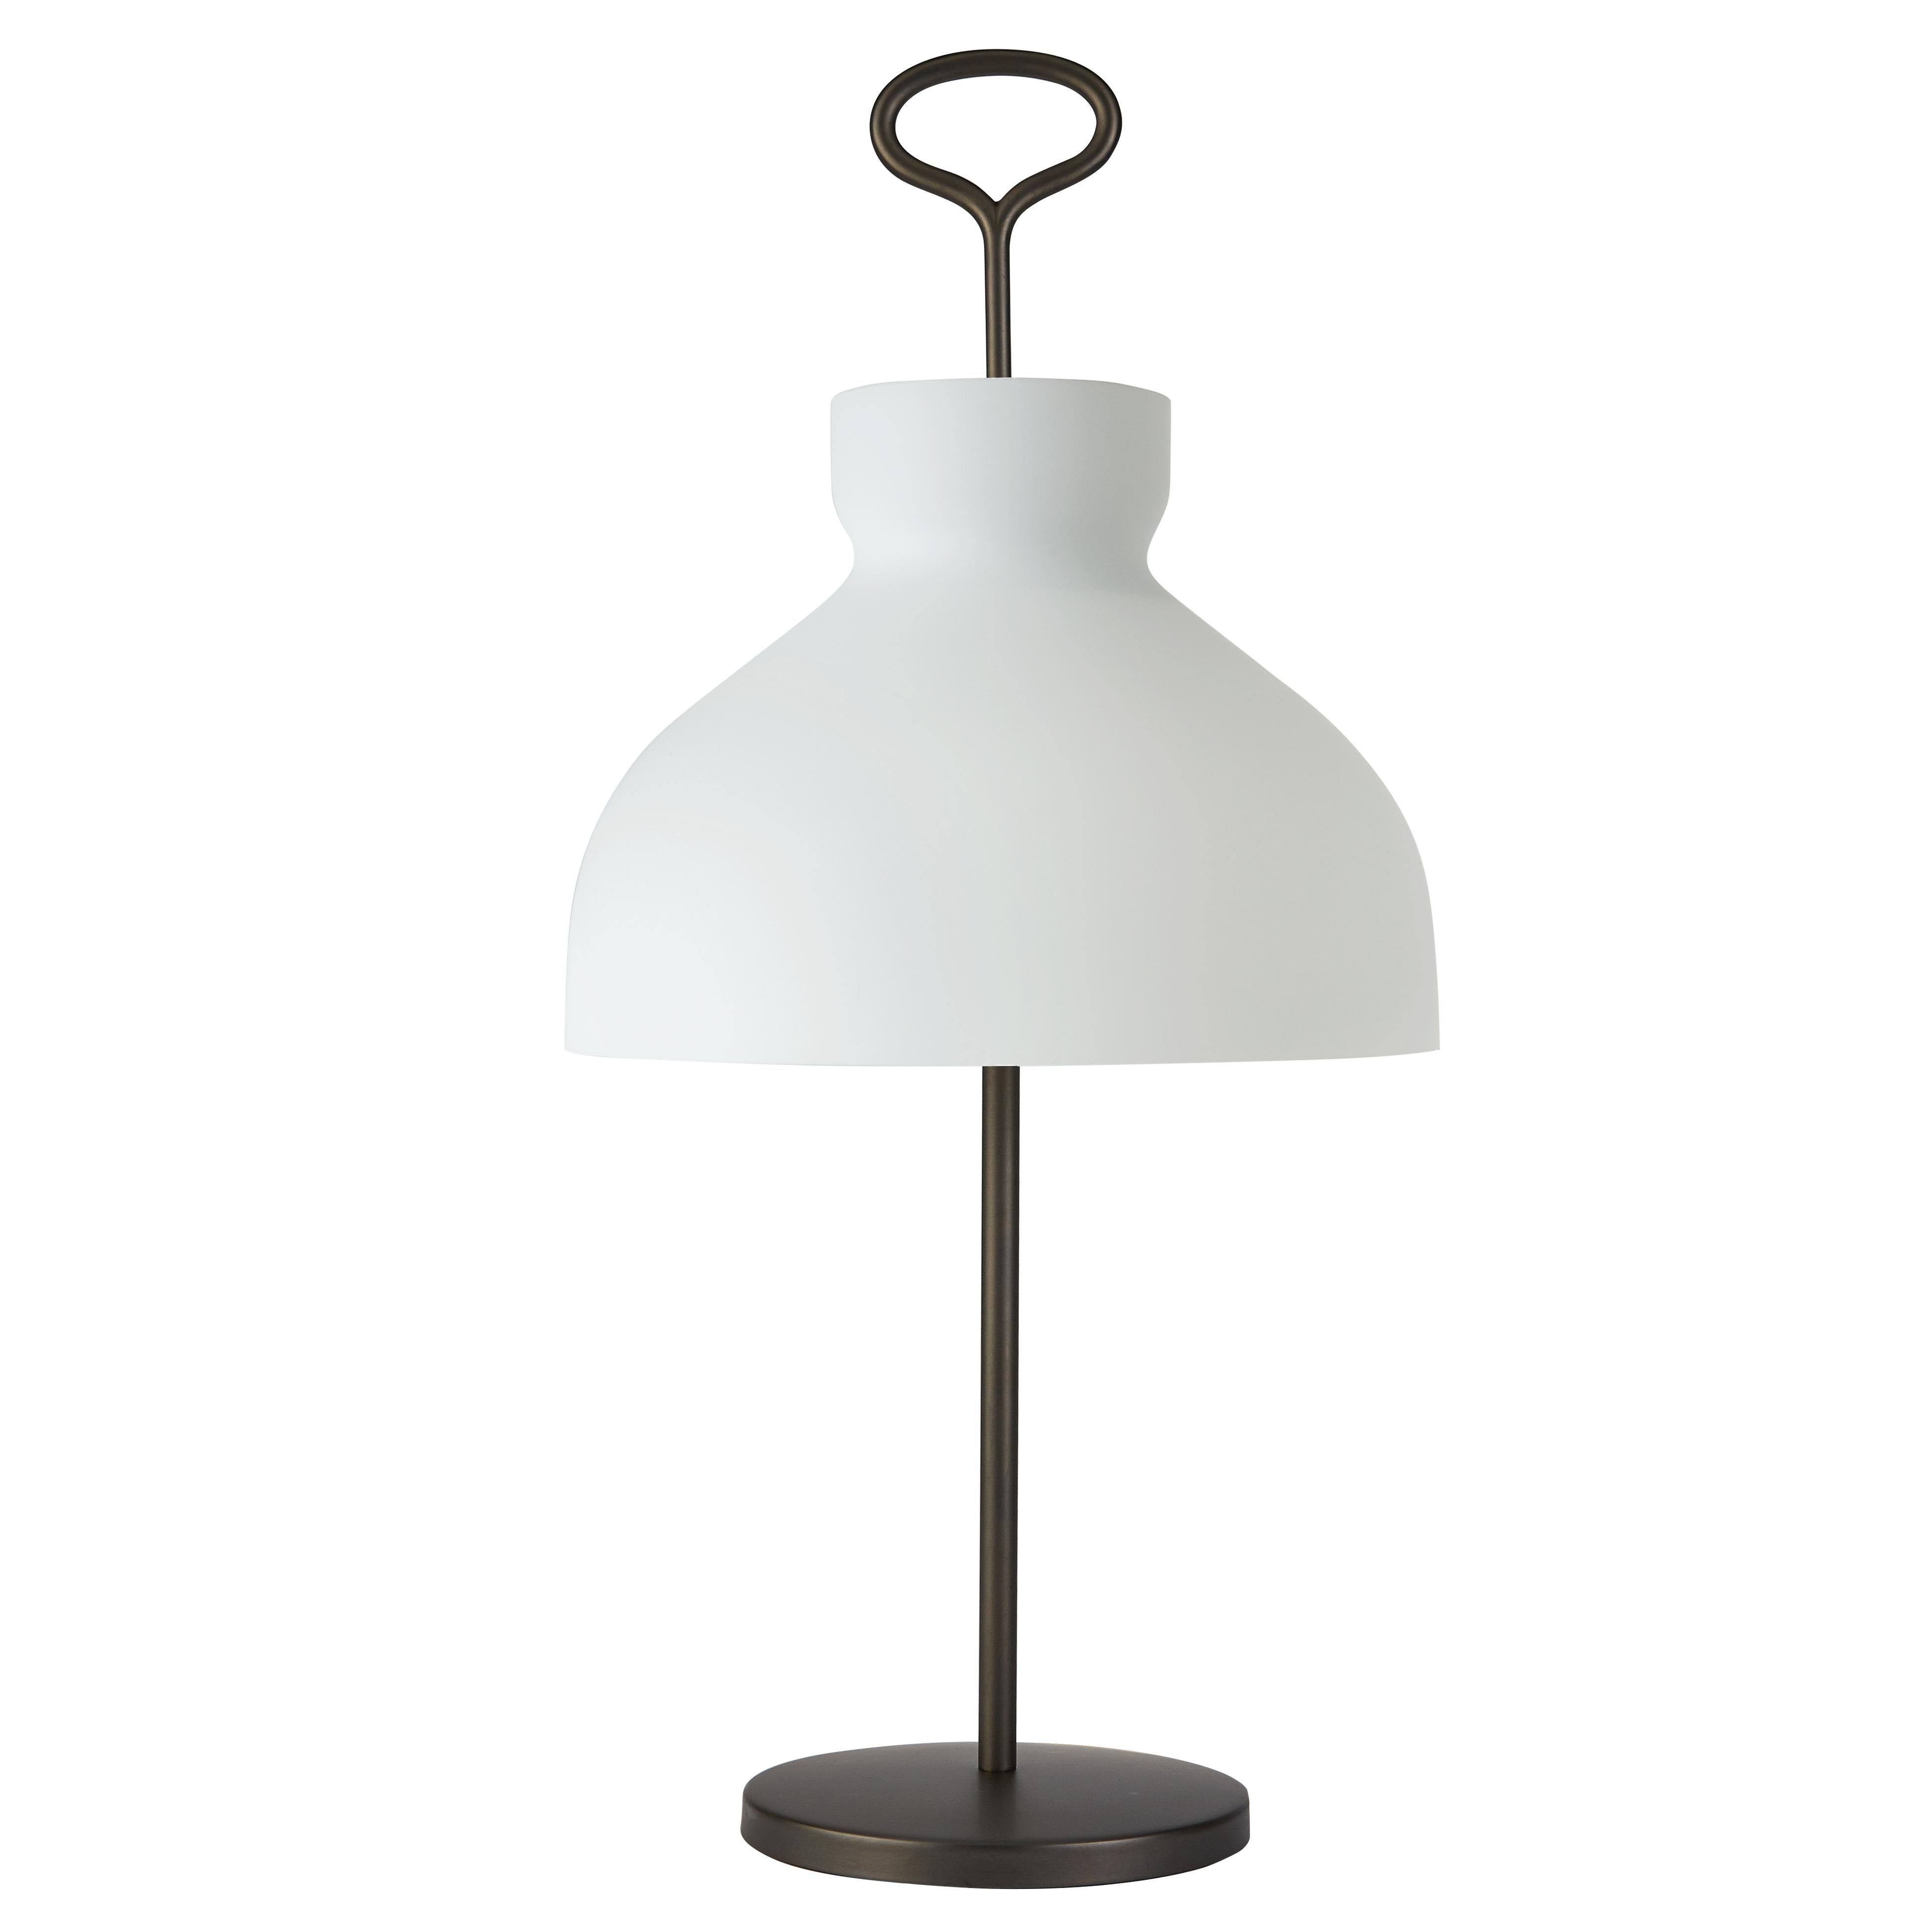 Large Ignazio Gardella 'Arenzano' Table Lamp in Chrome and Glass for Tato Italia For Sale 2